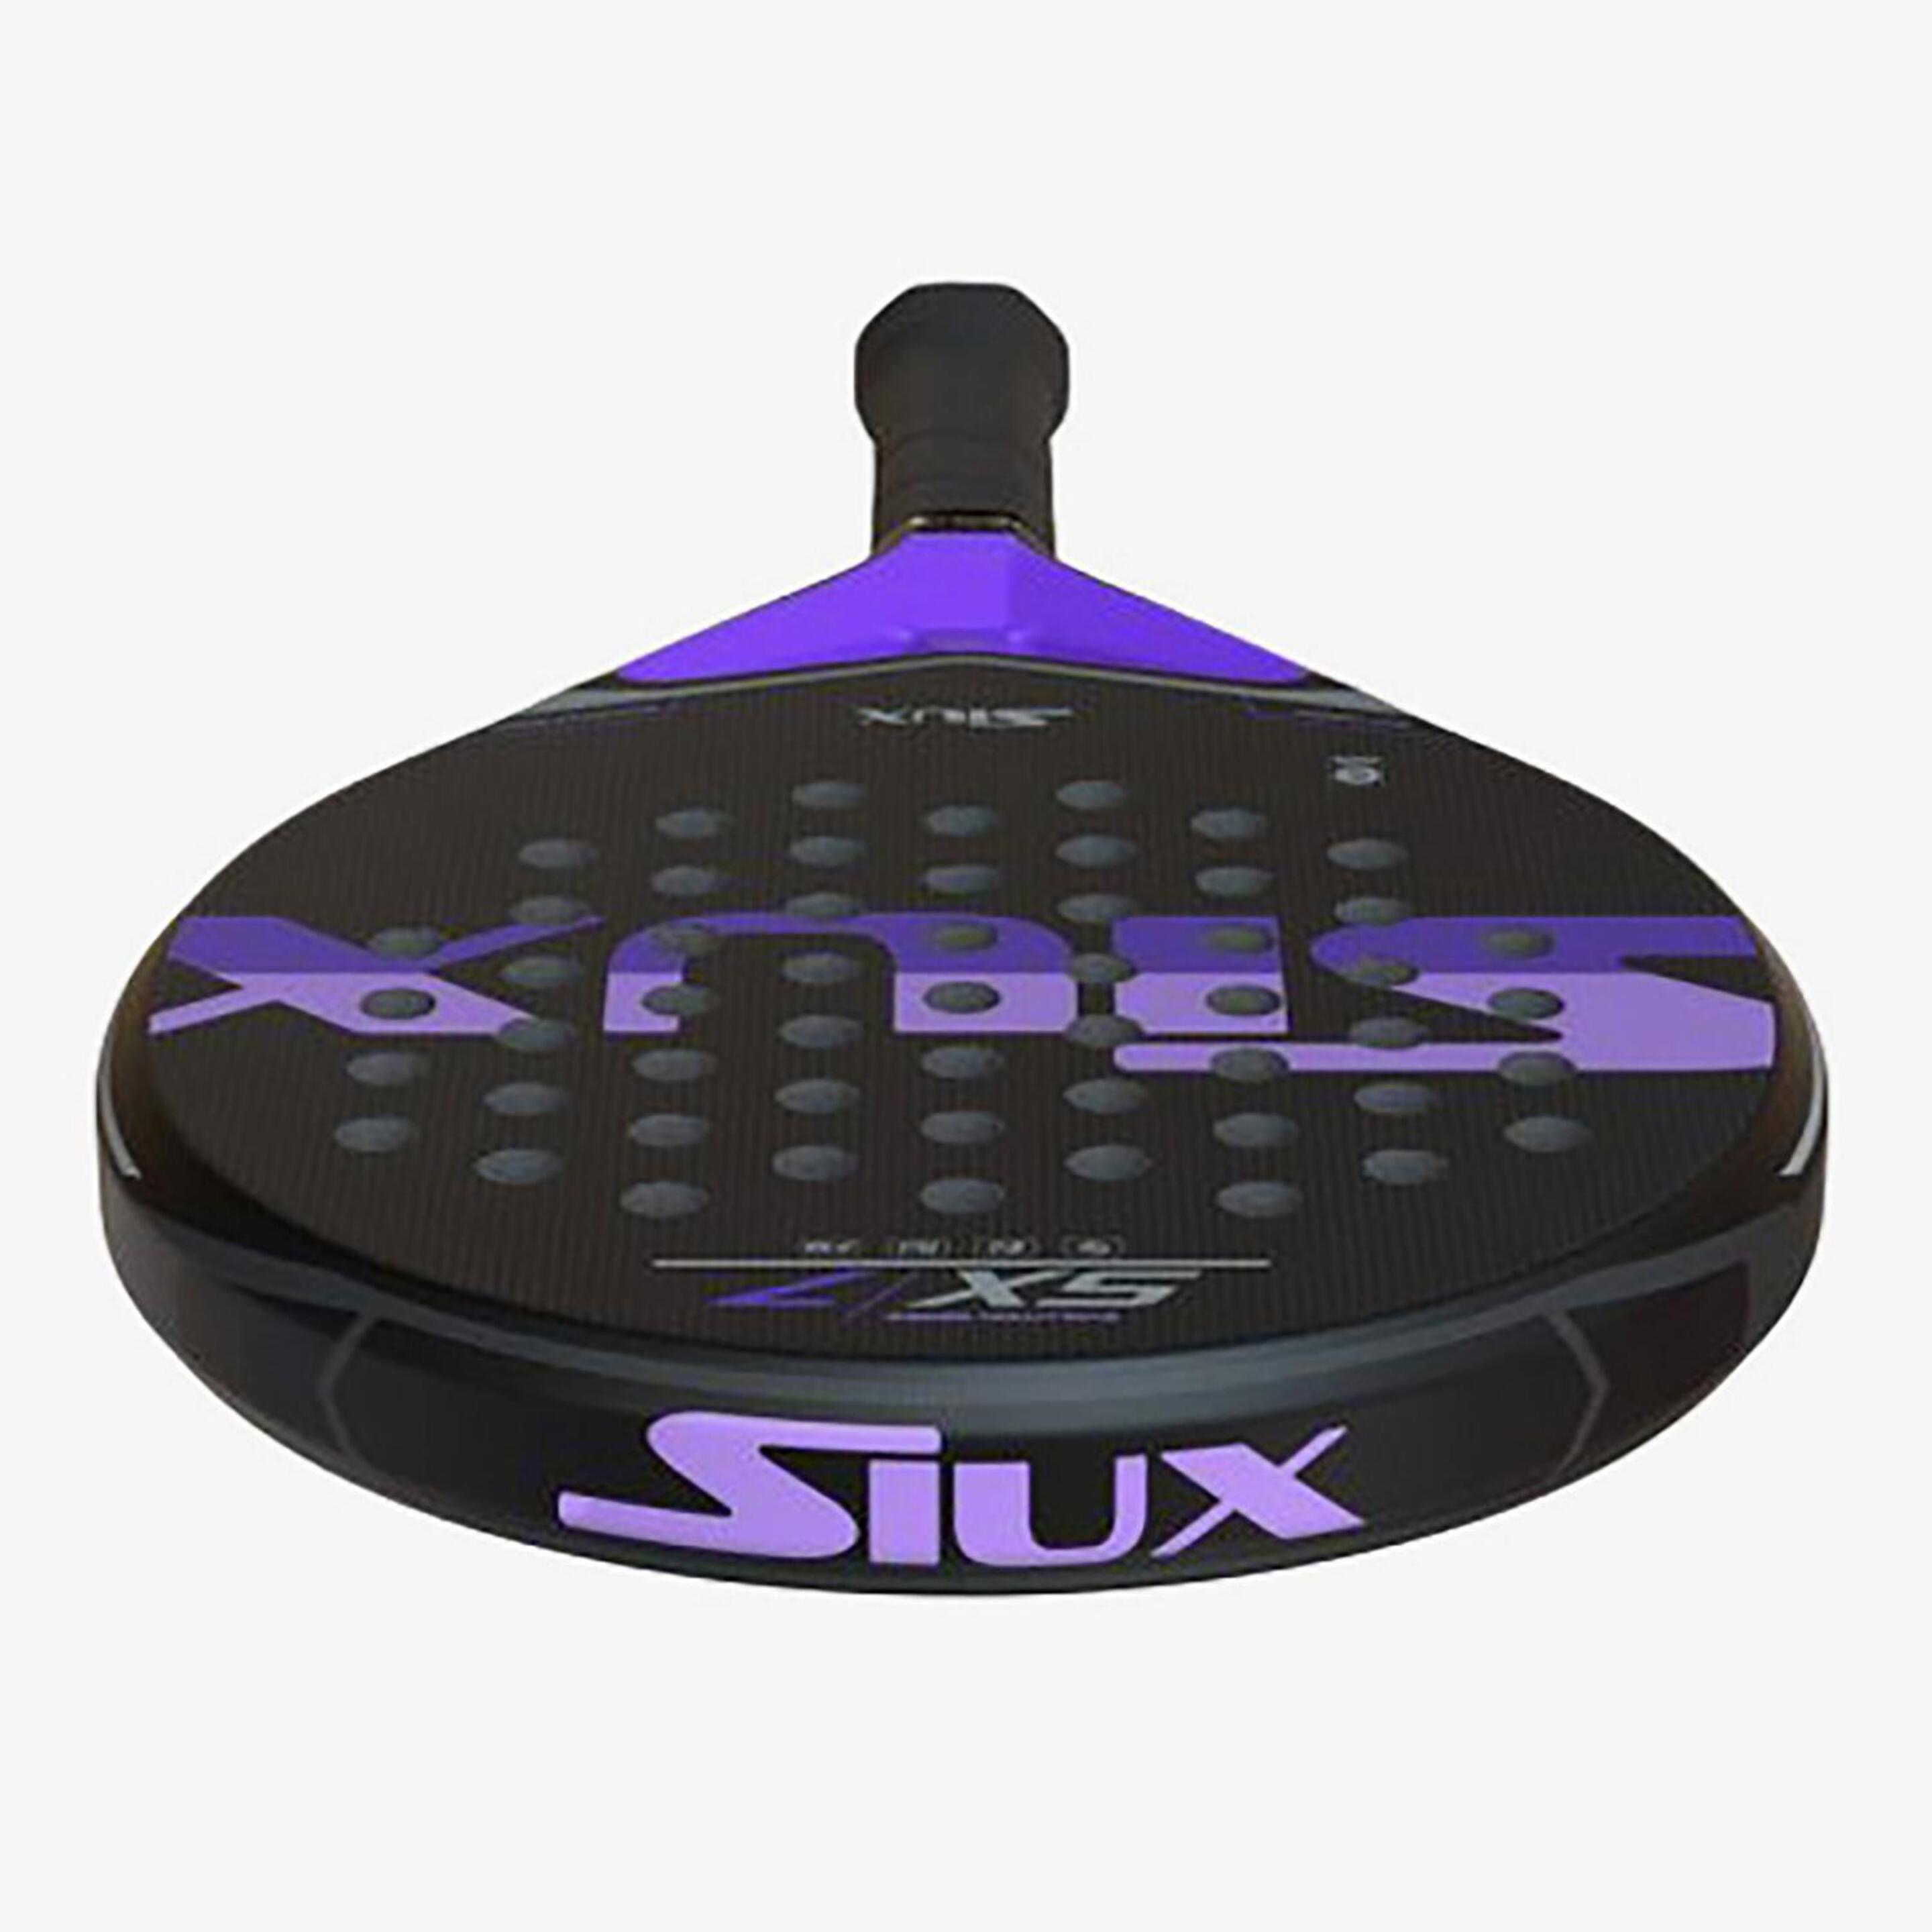 Siux Sx7